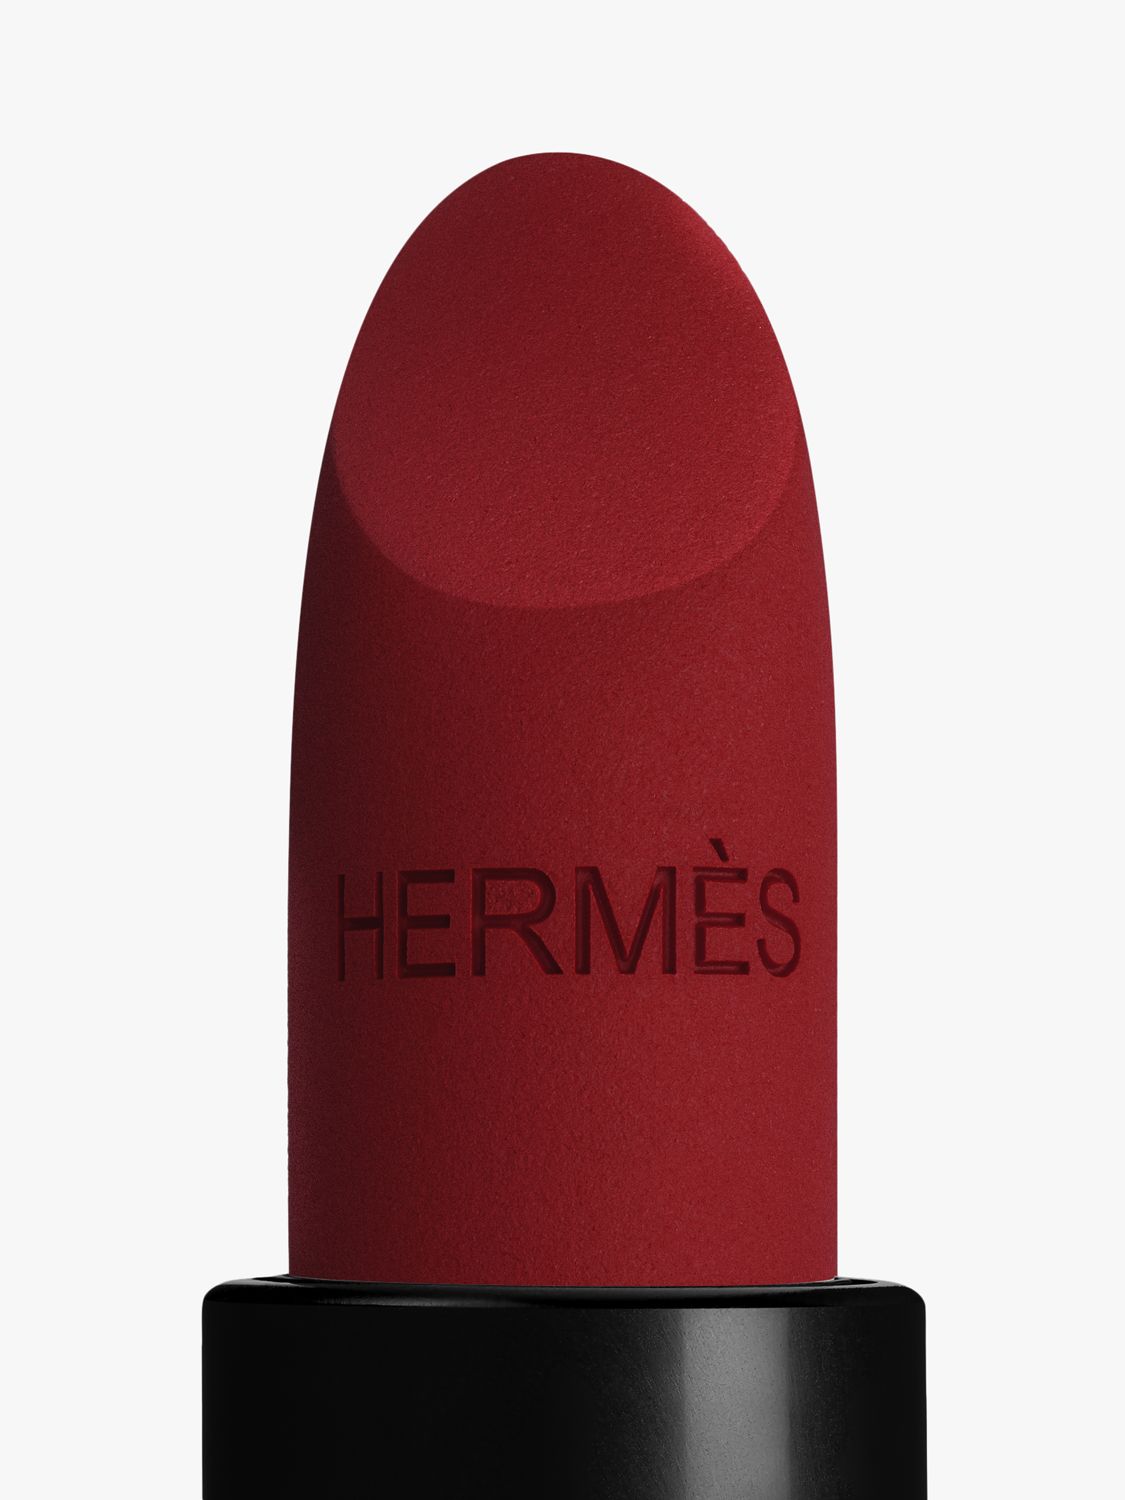 Hermès Rouge Hermès Matte Lipstick, Limited Edition, 76 Rouge Cinabre 3